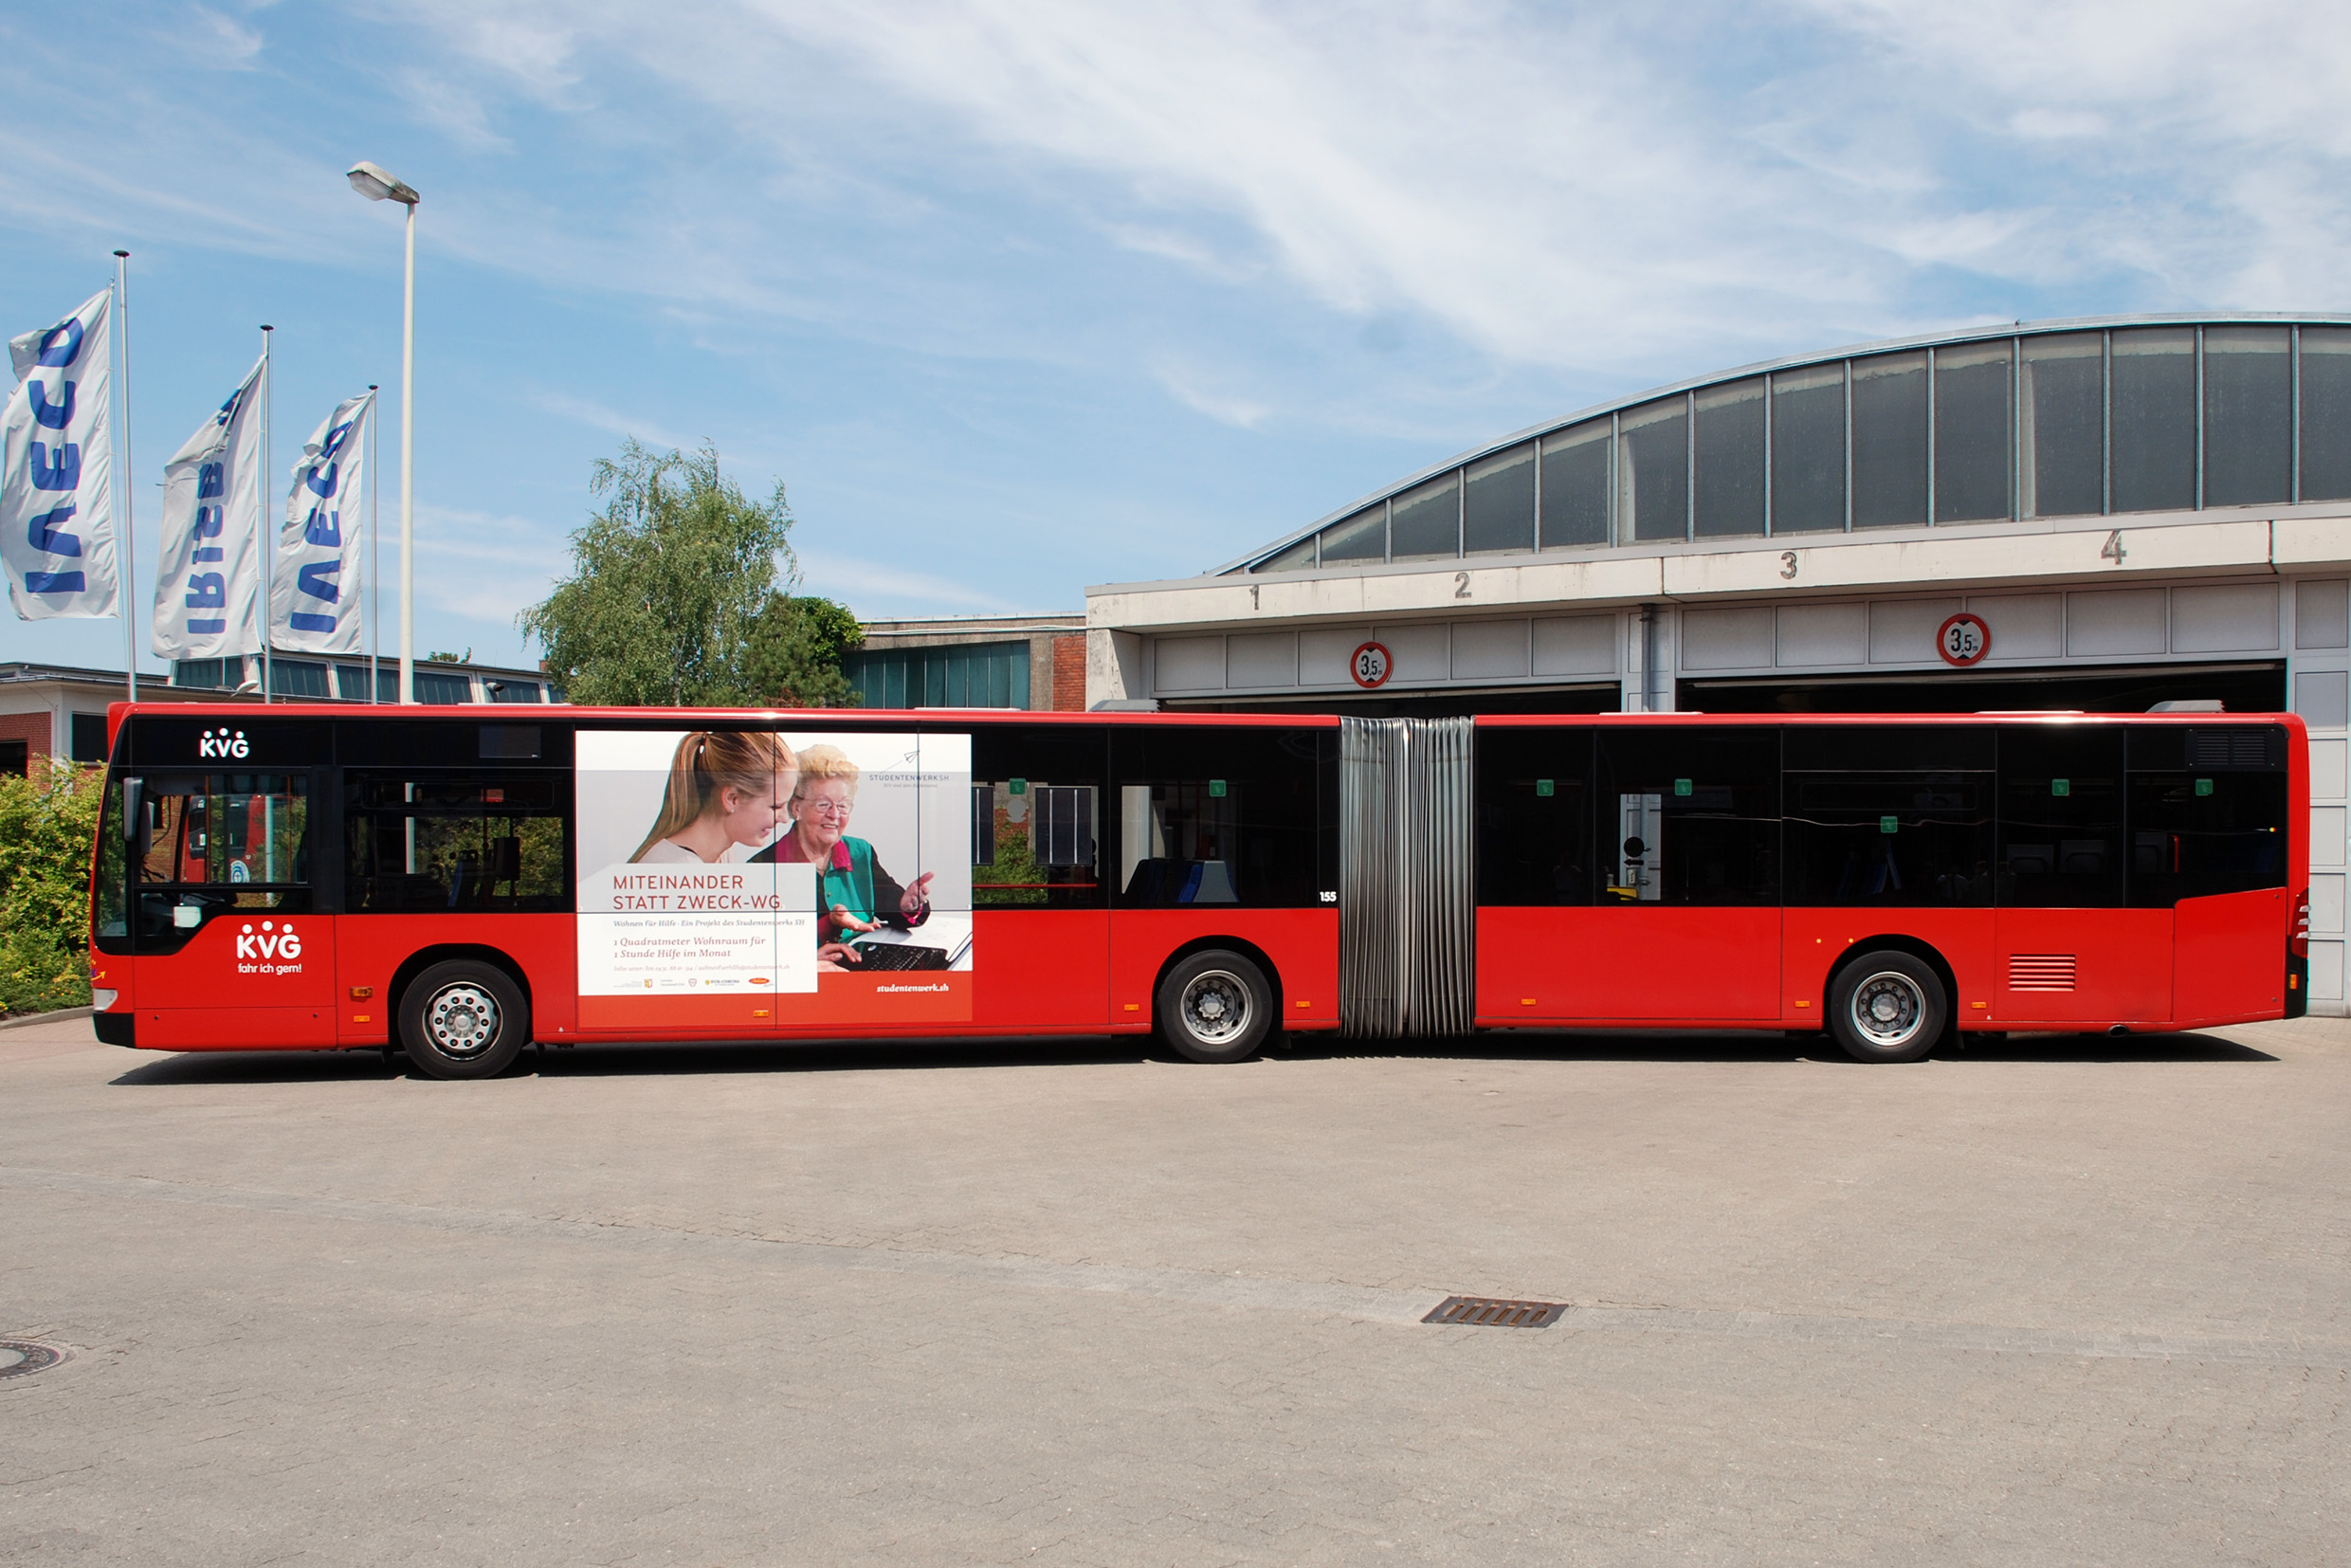 Ein großformatiges „Traffic Board“ auf einem Bus mit einem Bild von jüngeren und einer älteren Dame und mit der Unterschrift "Miteinander statt Zweck-WG".